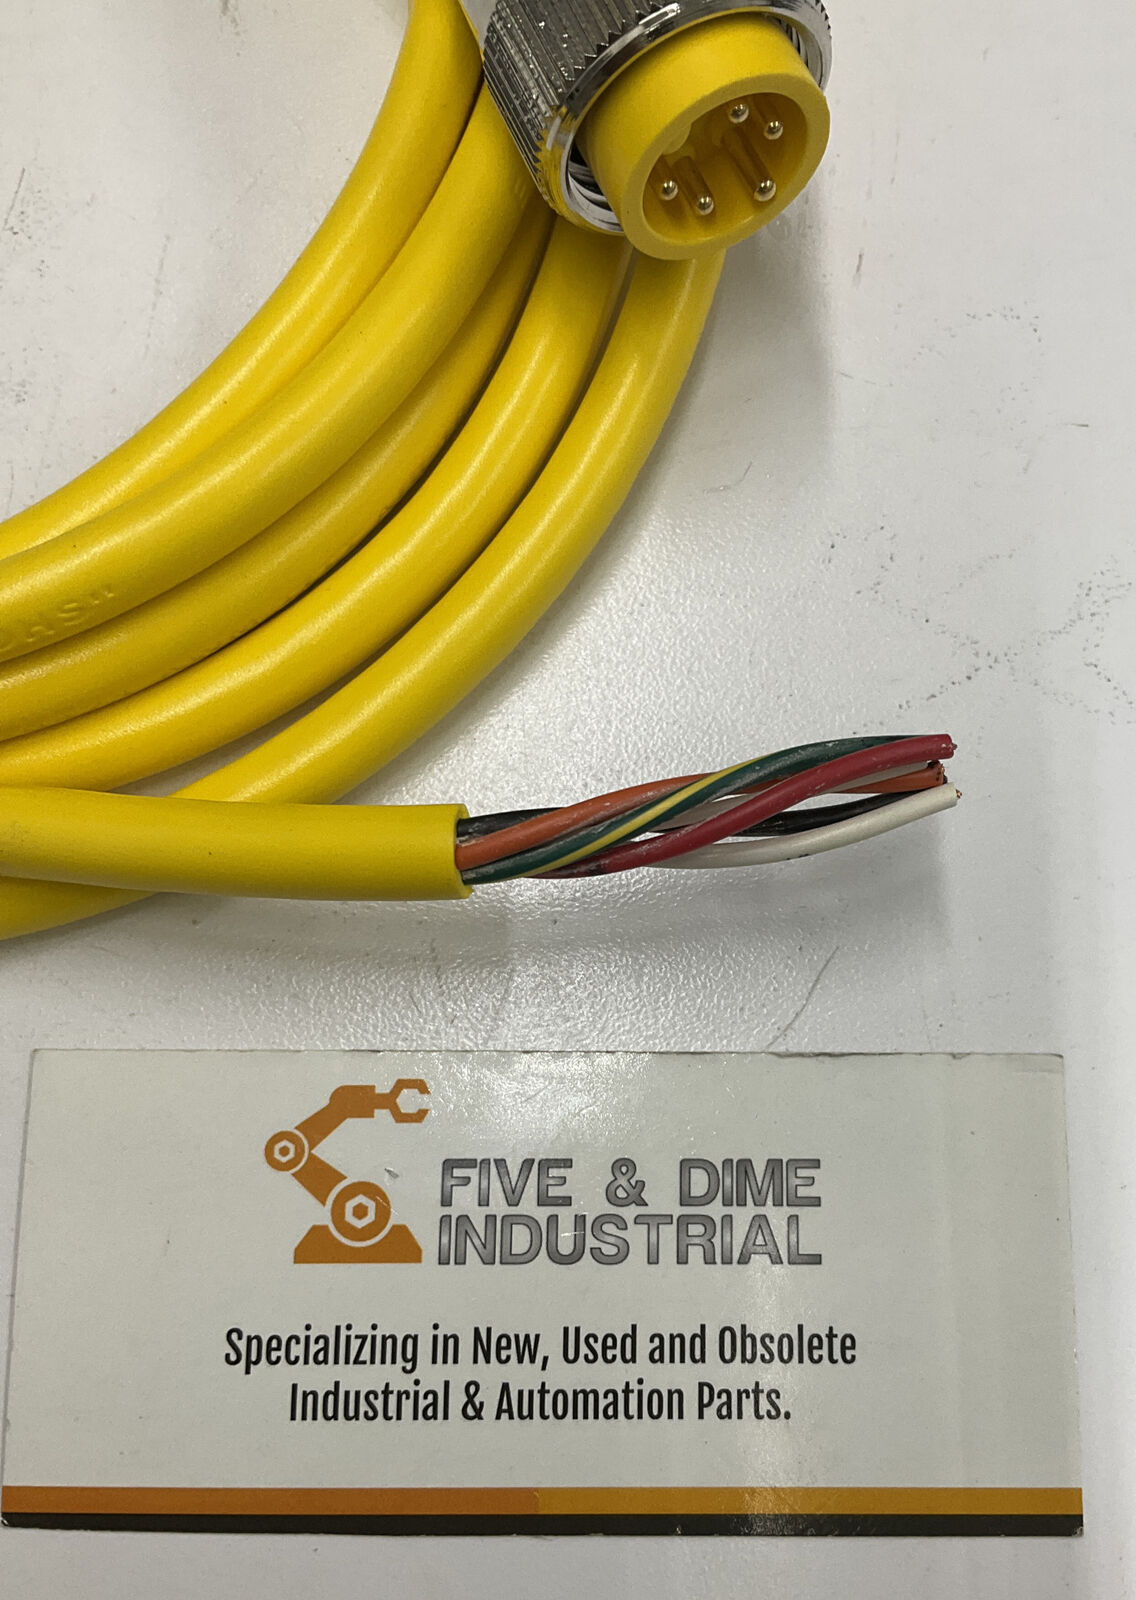 Mencom MIN-5MPX-12 New Connector Cable (CBL144)